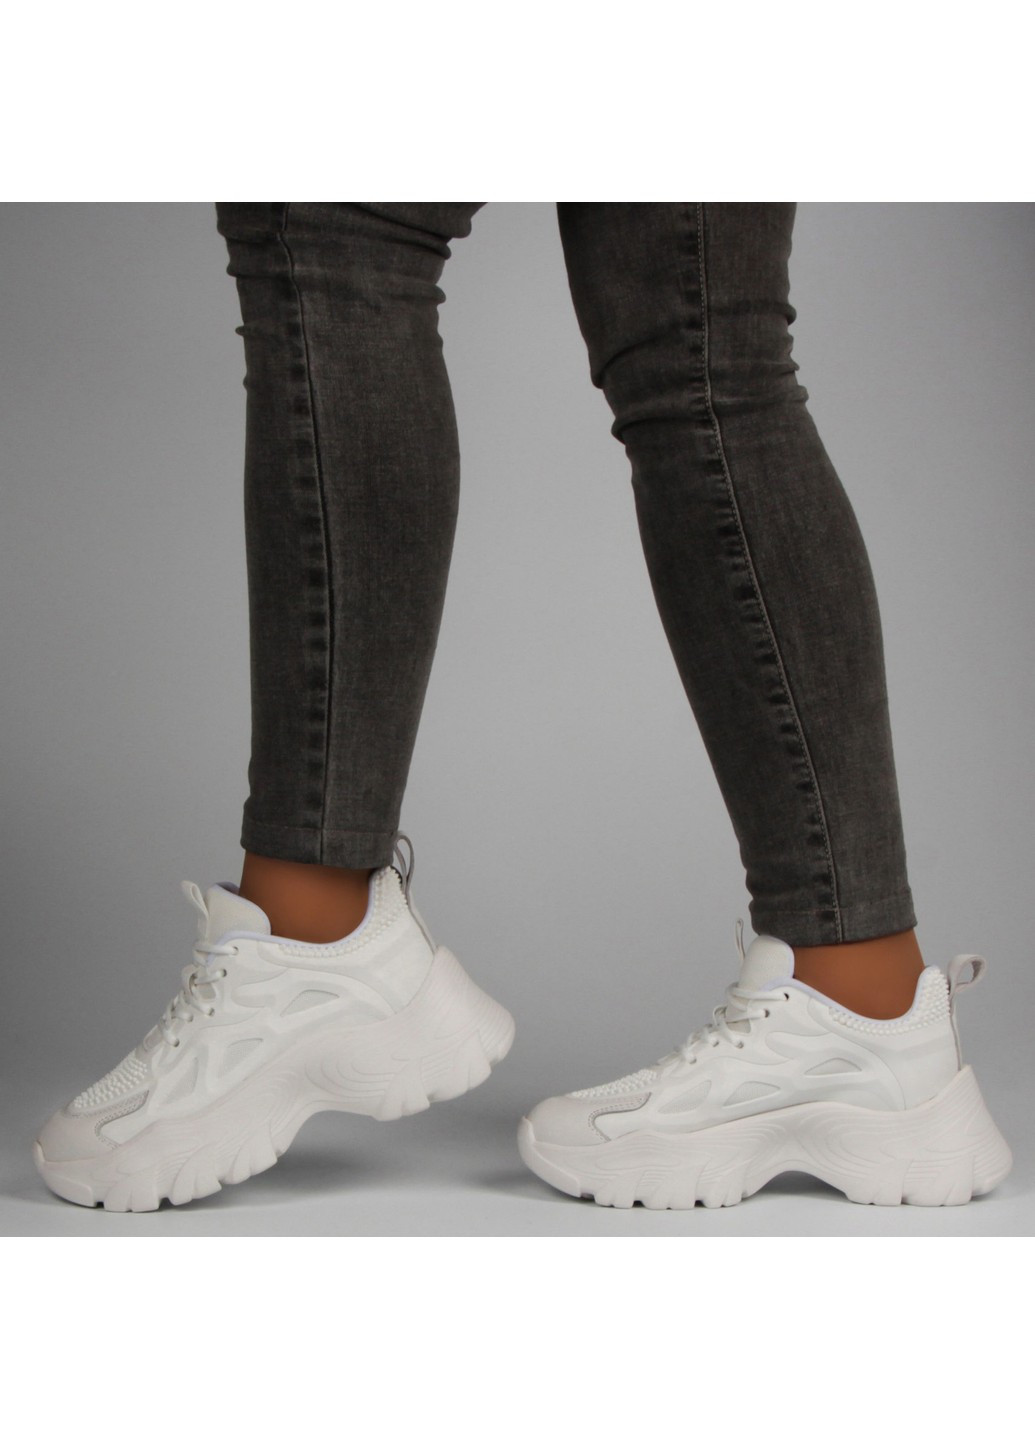 Белые демисезонные женские кроссовки 197994 Buts